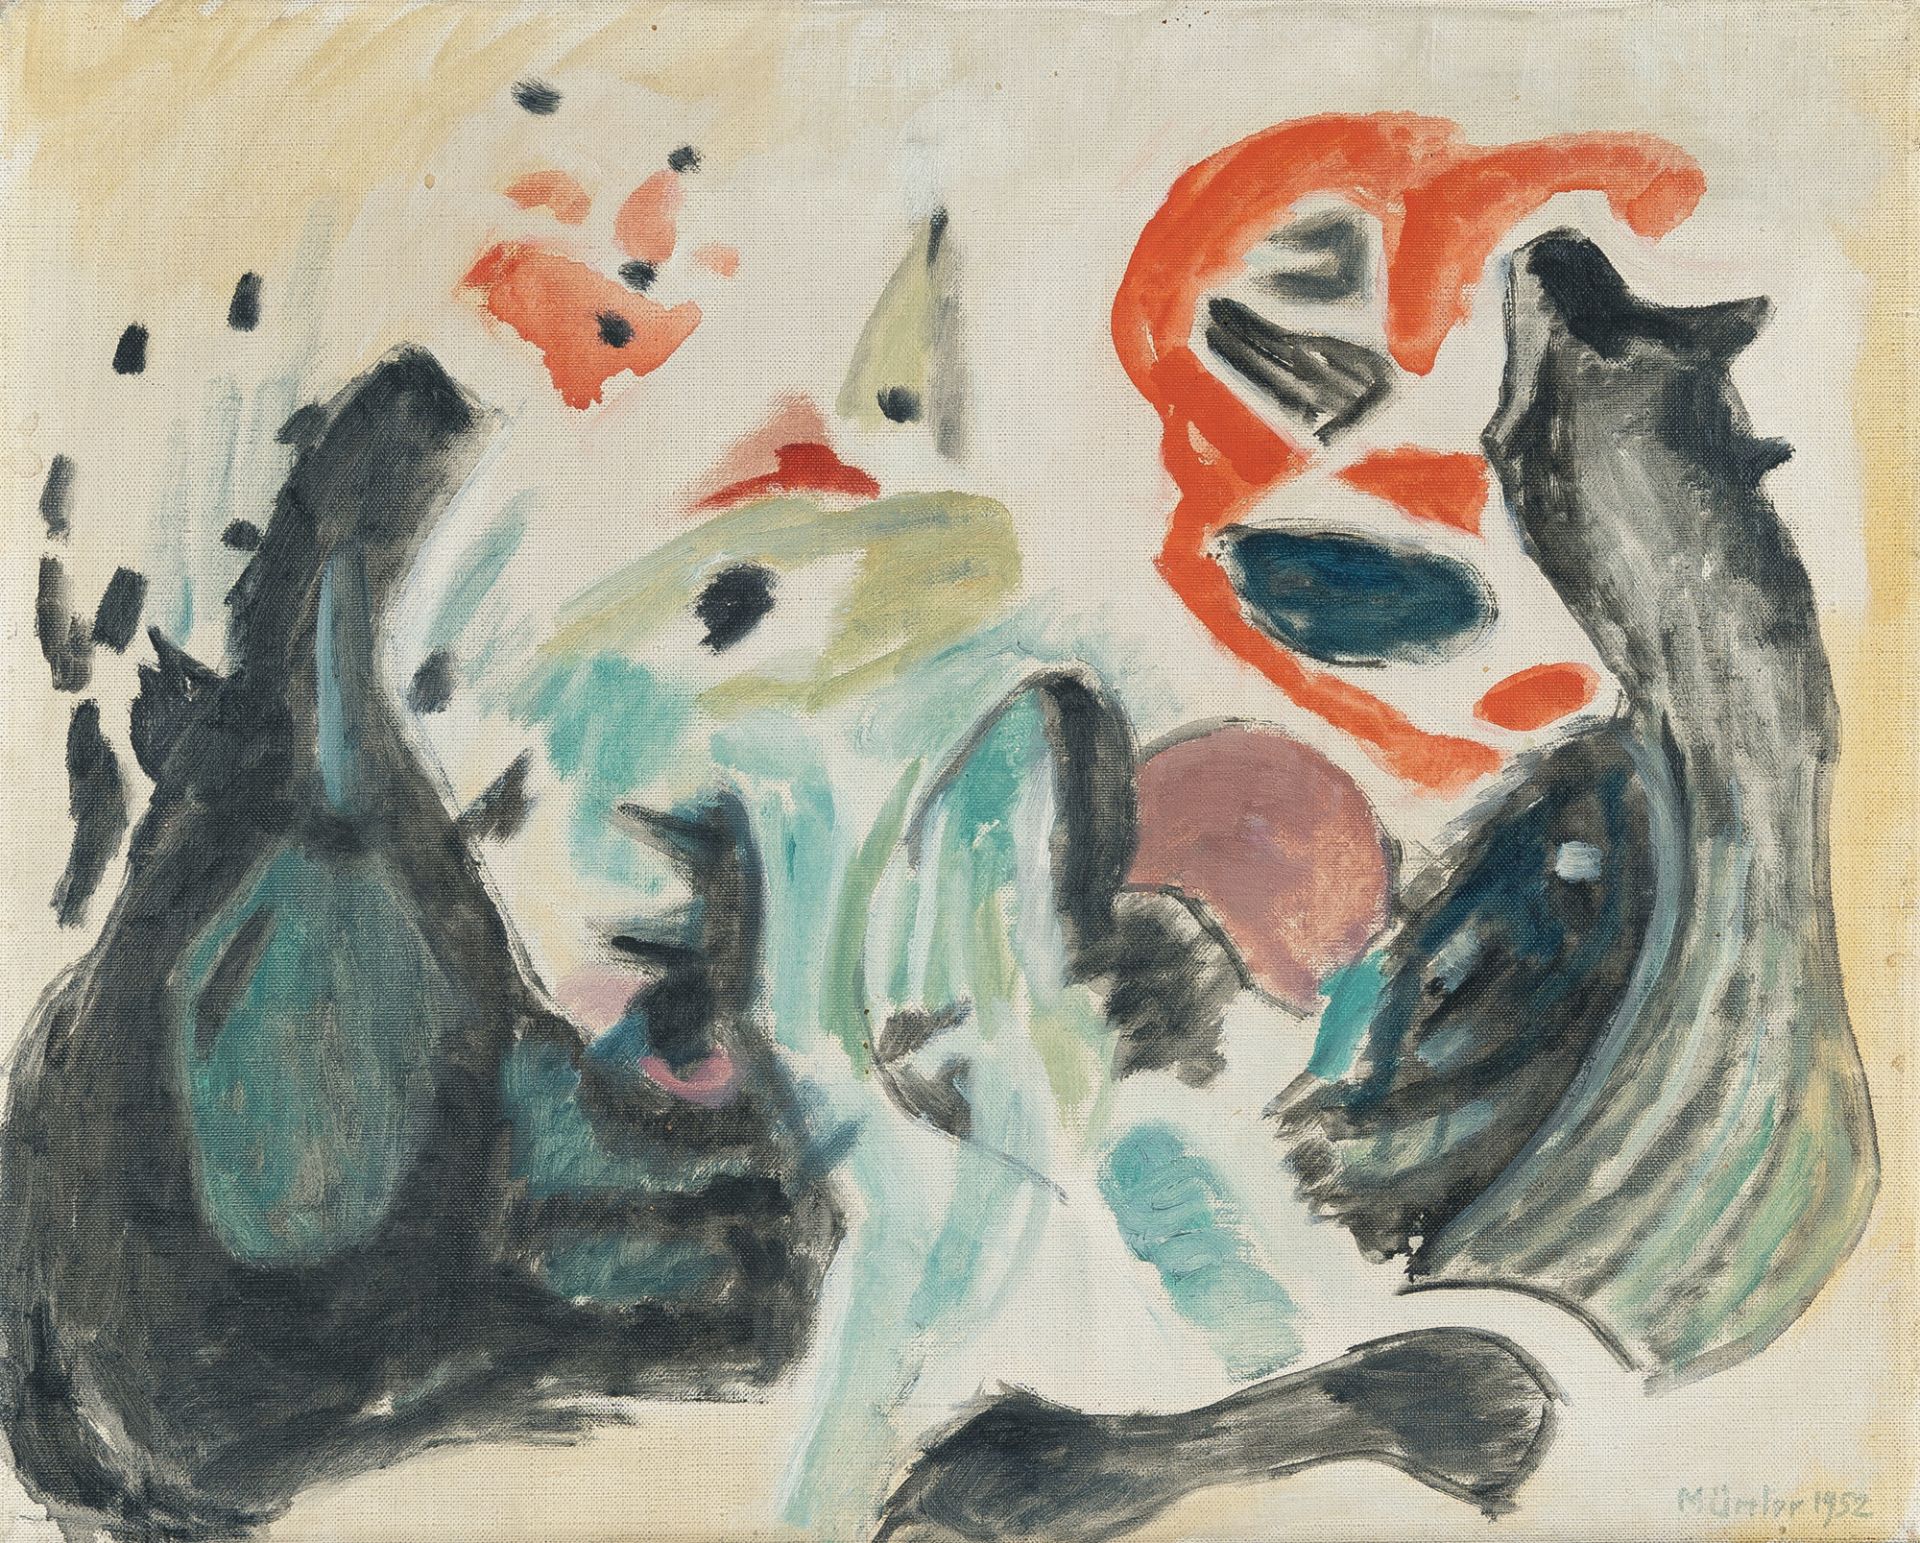 Gabriele Münter (1877 Berlin - Murnau 1962), “Black split in two”Oil on canvas. 1952. Ca. 33 x 41